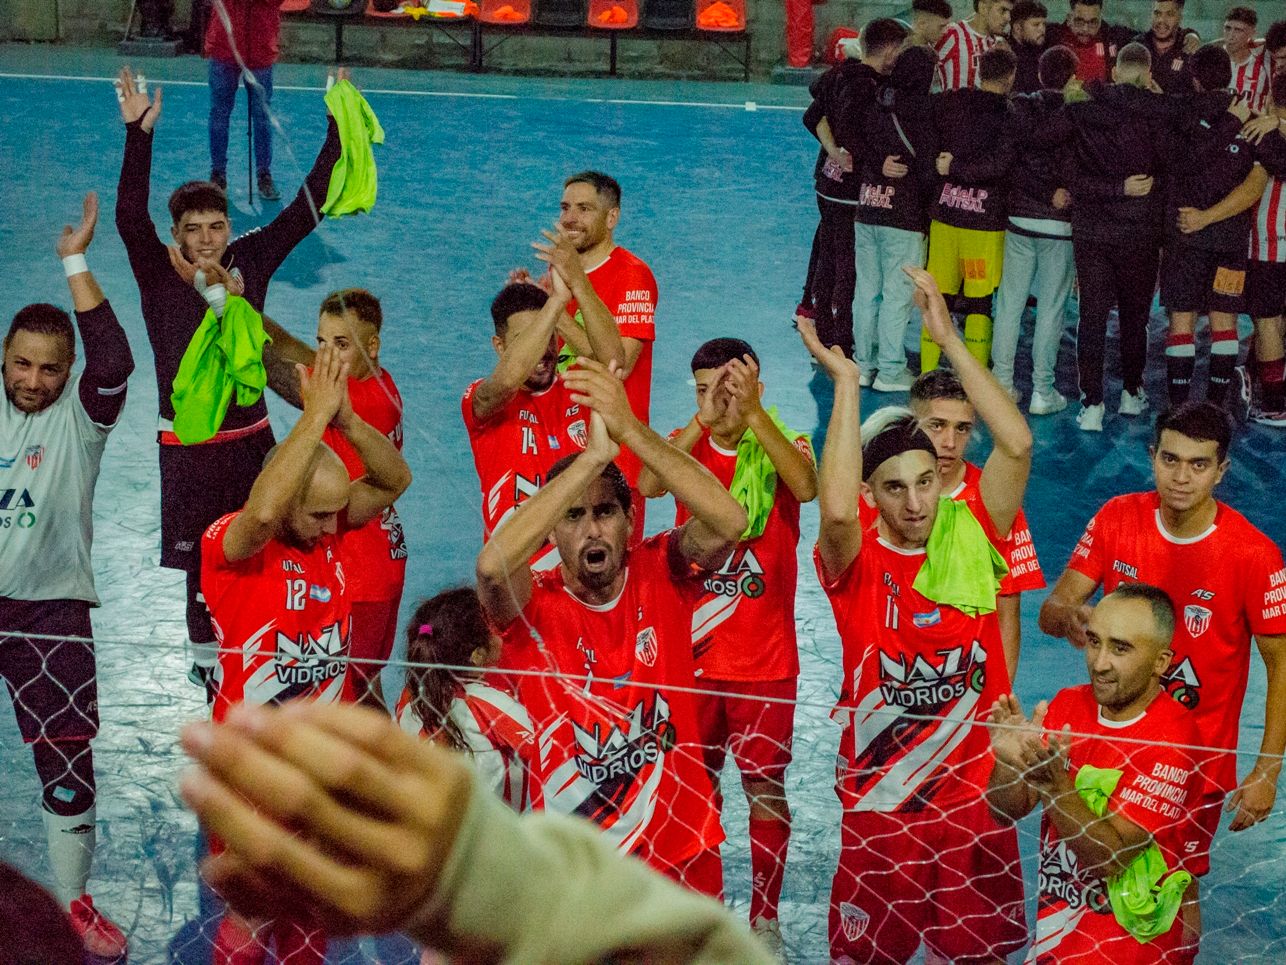 Los jugadores de Banco Provincia saludando al público que los acompañó. (Foto: María Belén Fernández)